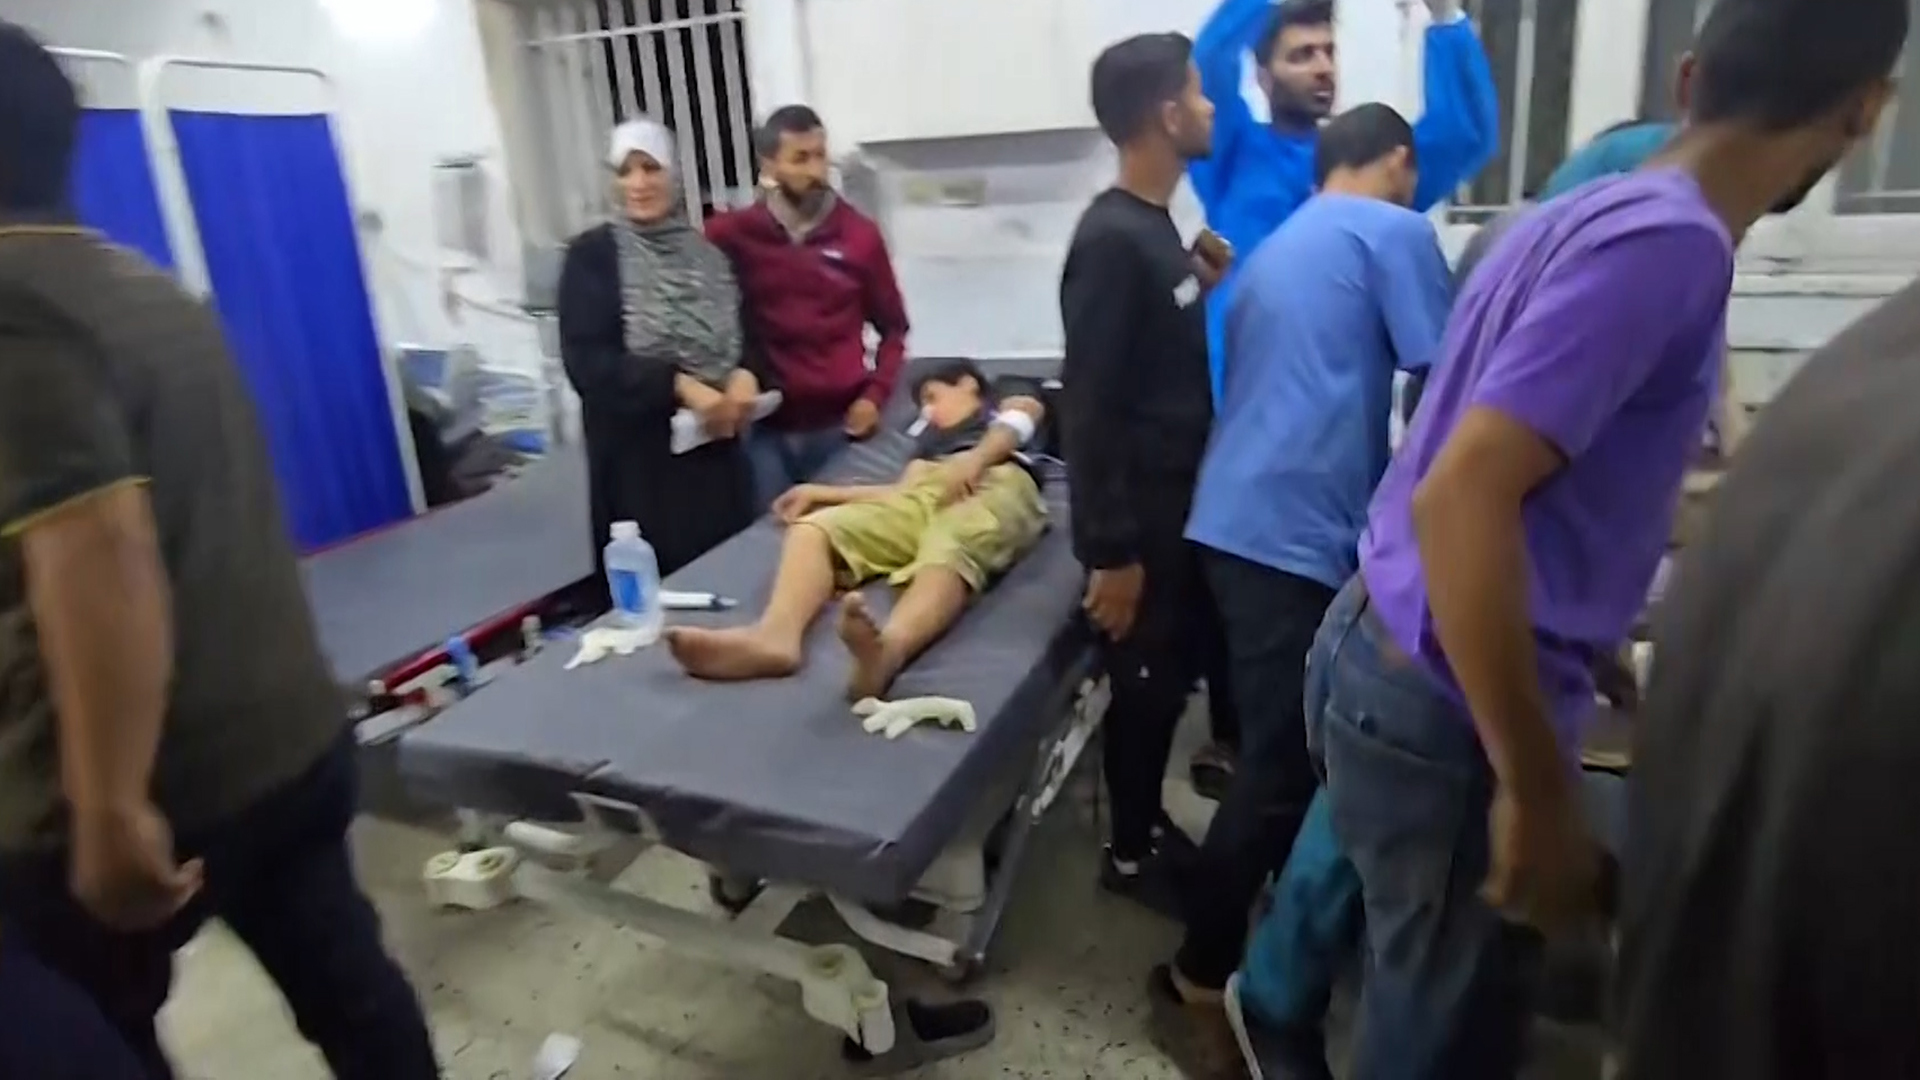 وصول جثث ومصابين إلى مستشفى المعمداني بعد قصف منزل في غزة | التقارير الإخبارية – البوكس نيوز